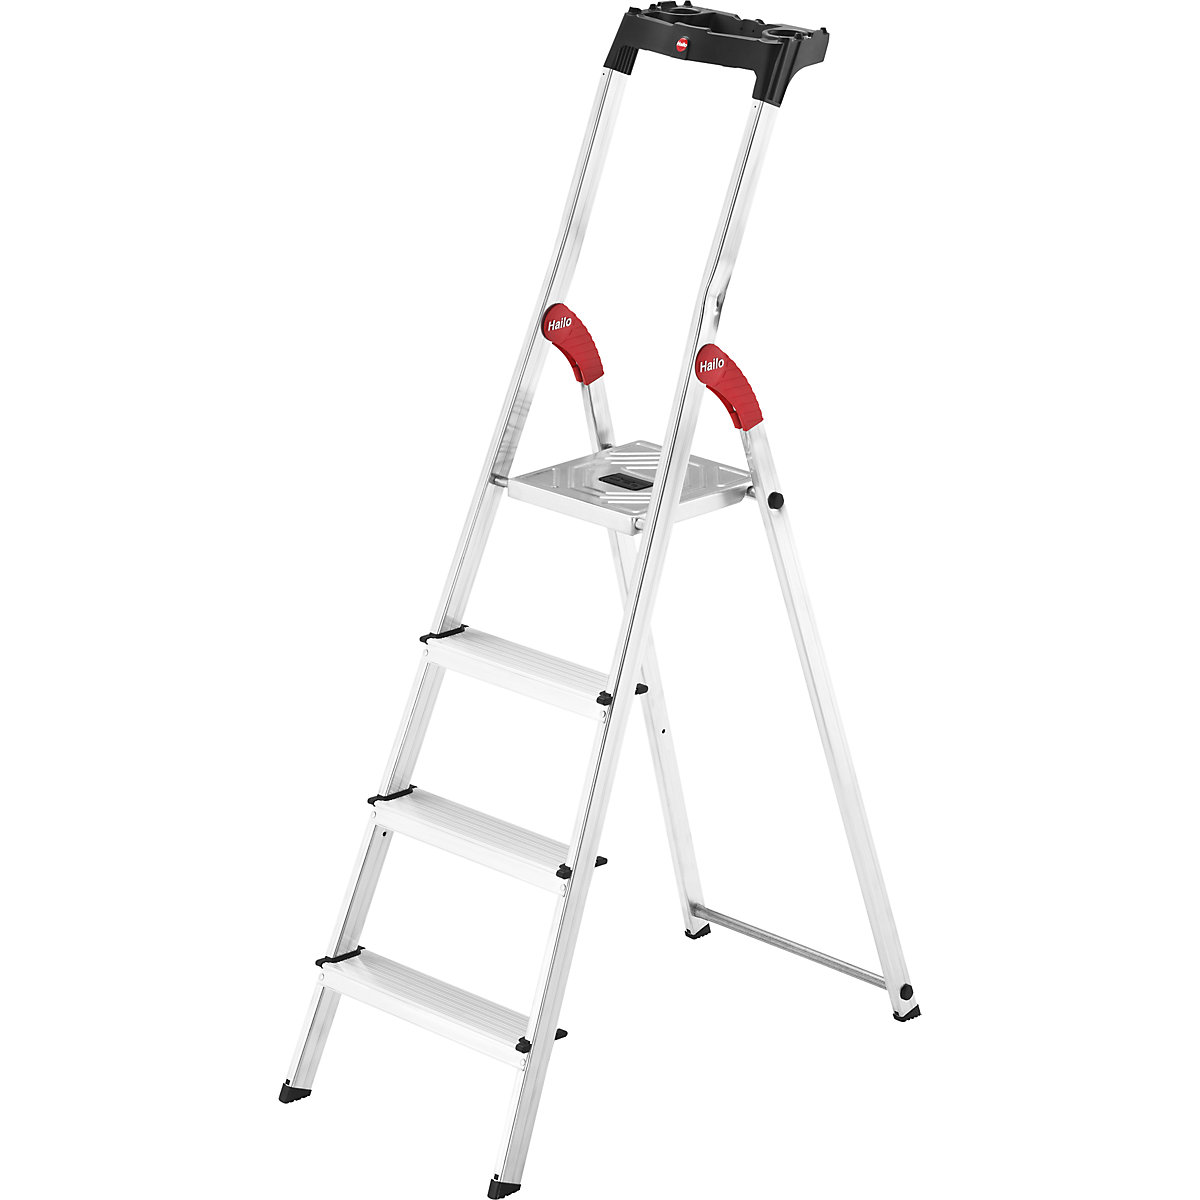 Aluminijasta dvokraka lestev s stopnicami StandardLine L60 – Hailo, nosilnost 150 kg, 4 stopnice